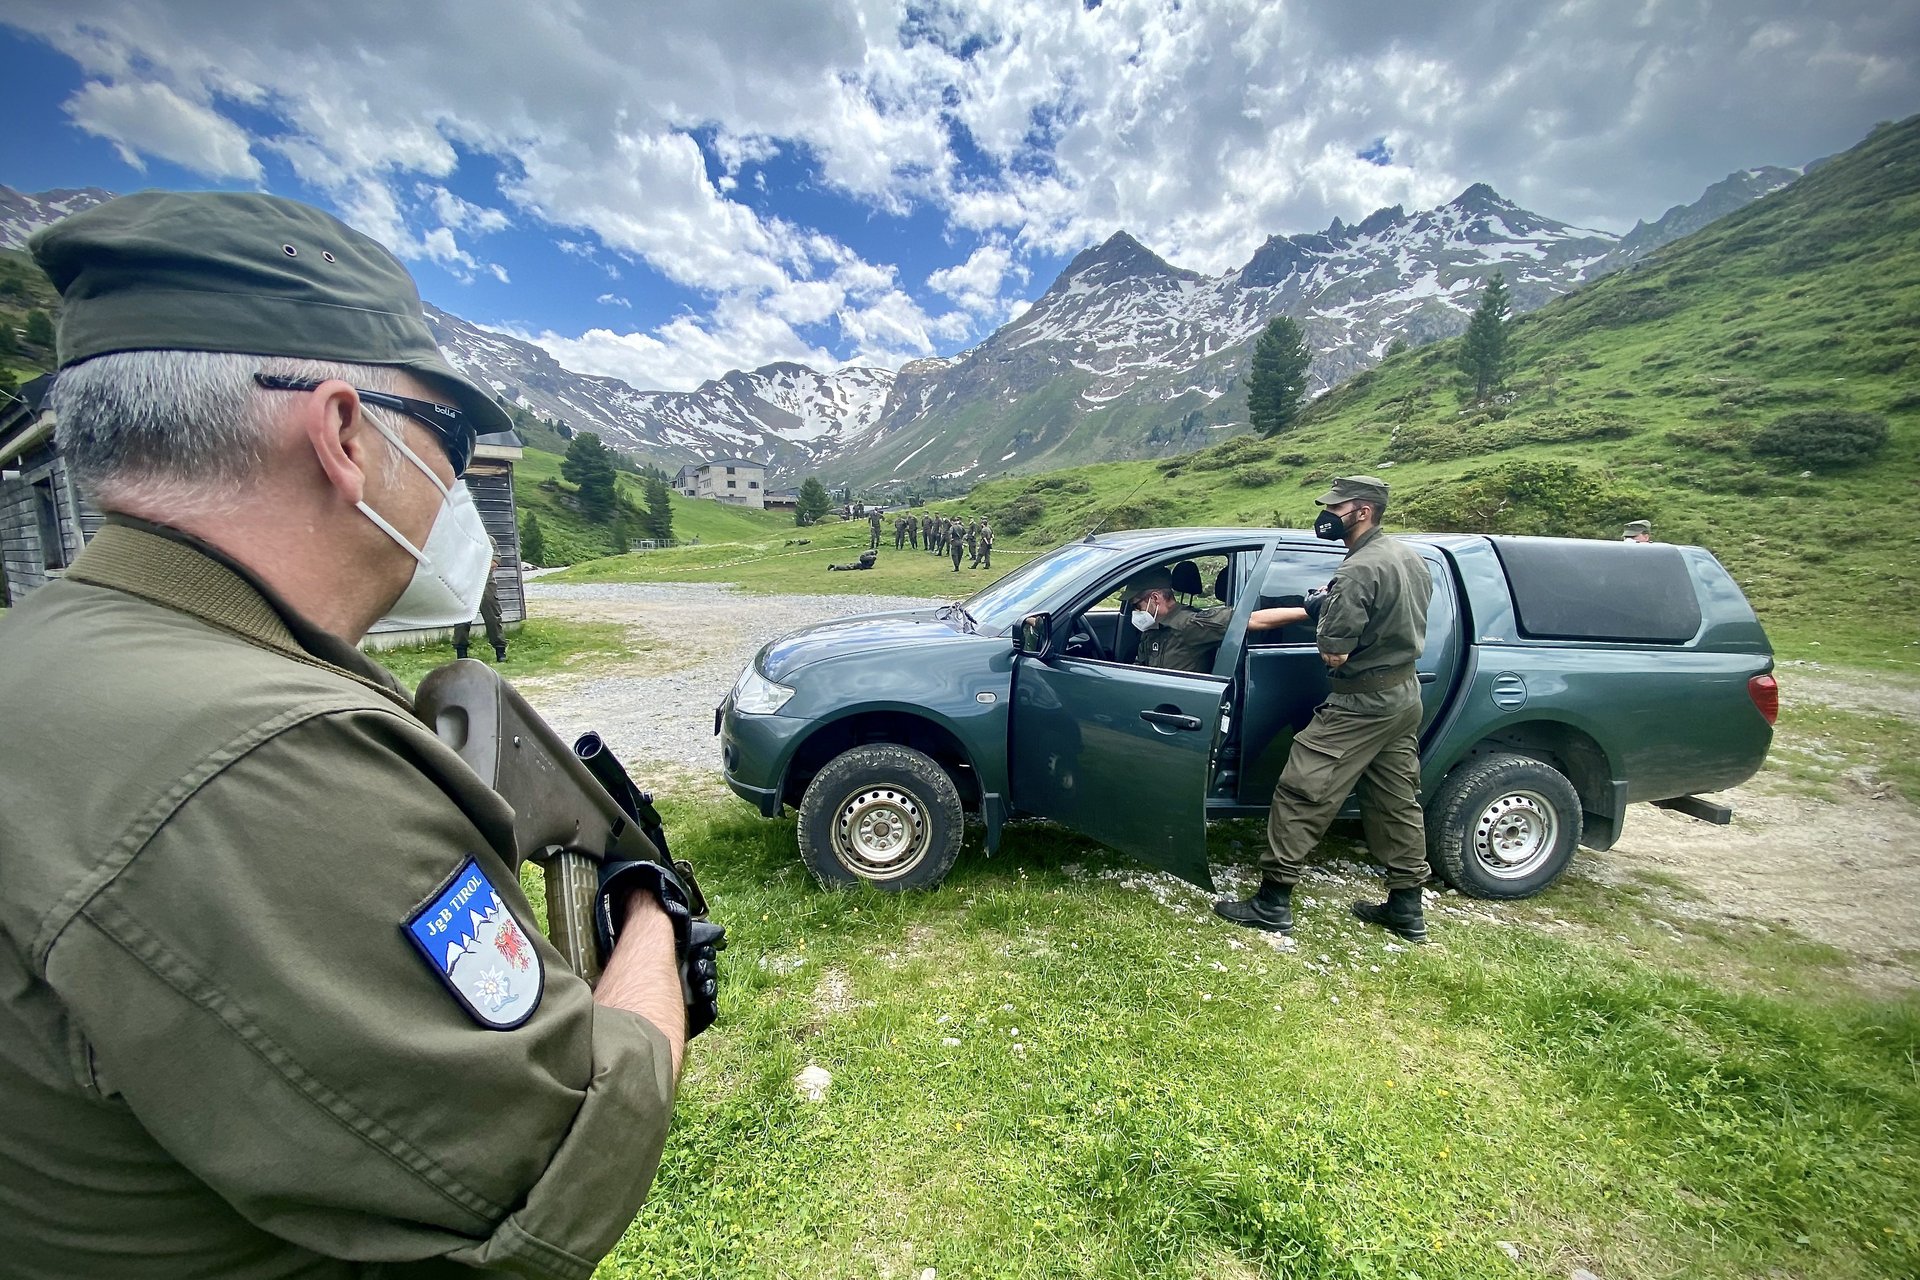 Milizsoldaten des Jägerbataillons Tirol kontrollieren während einer Übung ein Fahrzeug und dessen Lenker.